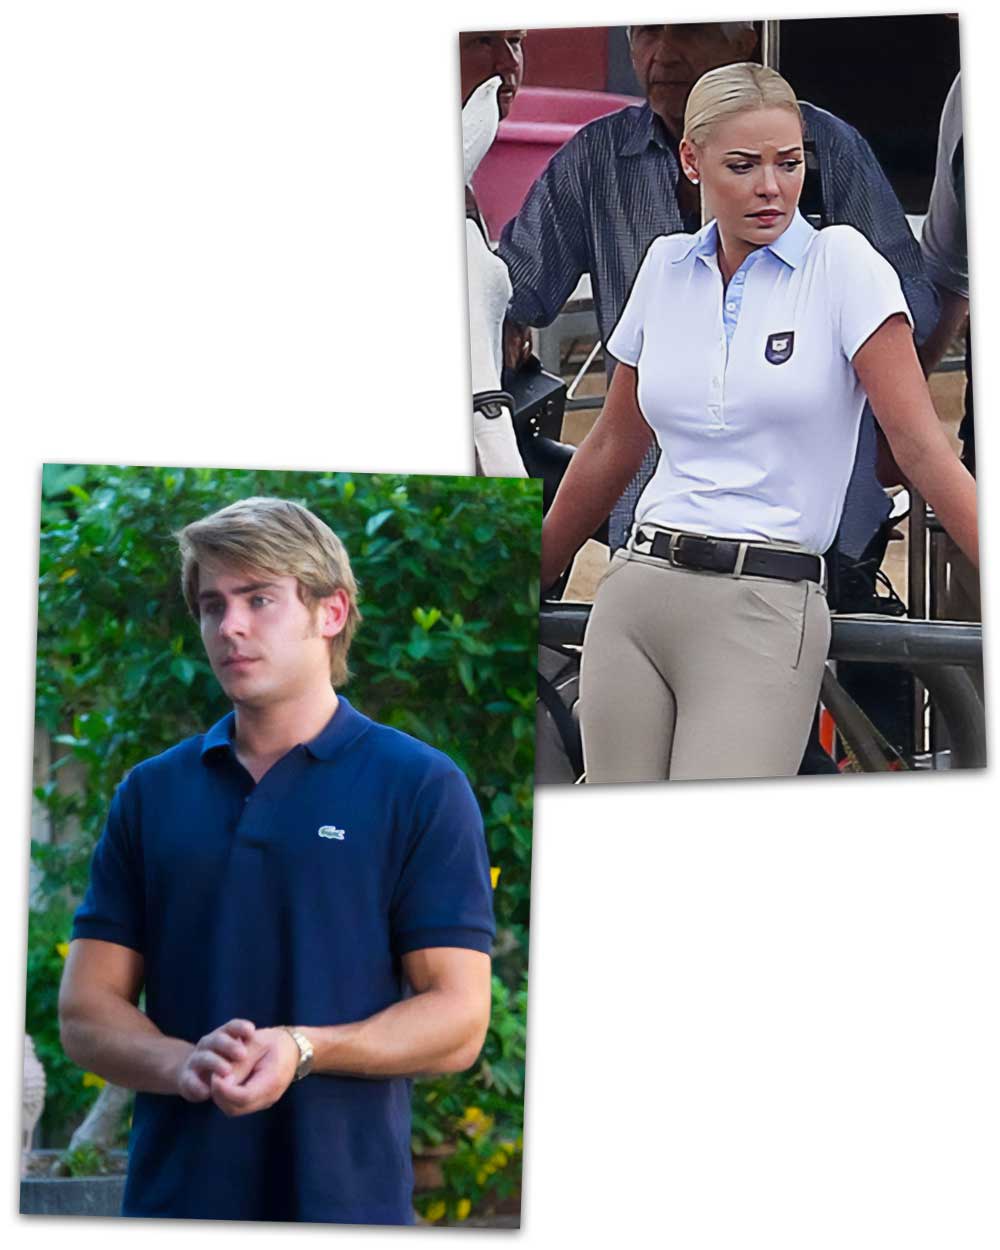 Preppy Polo Shirts Zac Efron and Katherine Heigl